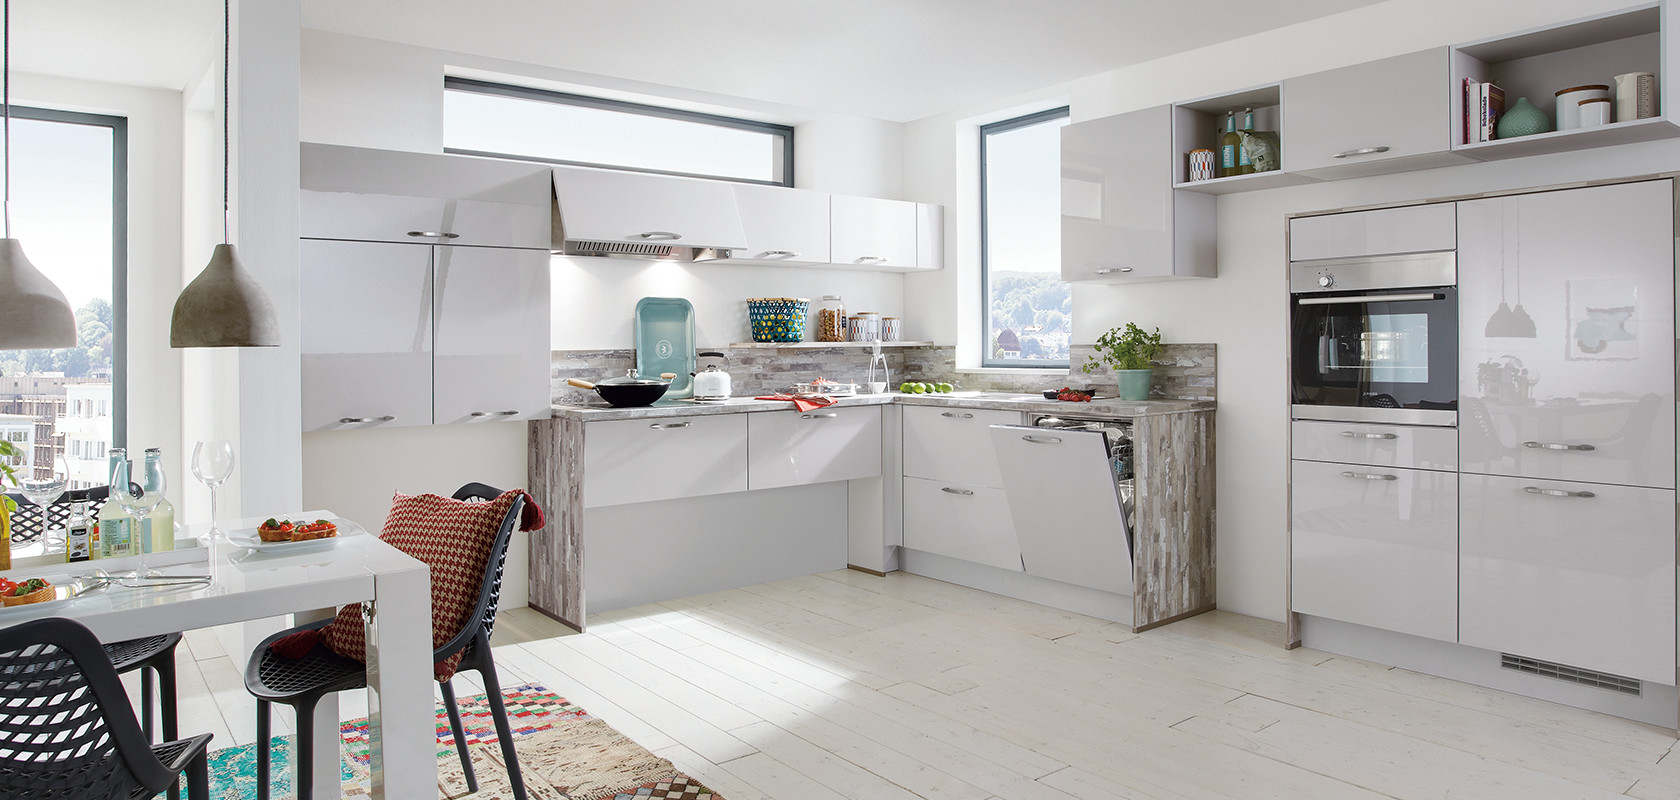 Helle moderne Küche mit weißen Schränken, Edelstahlgeräten und Farbtupfern von dekorativen Gegenständen und einem mehrfarbigen Teppich.